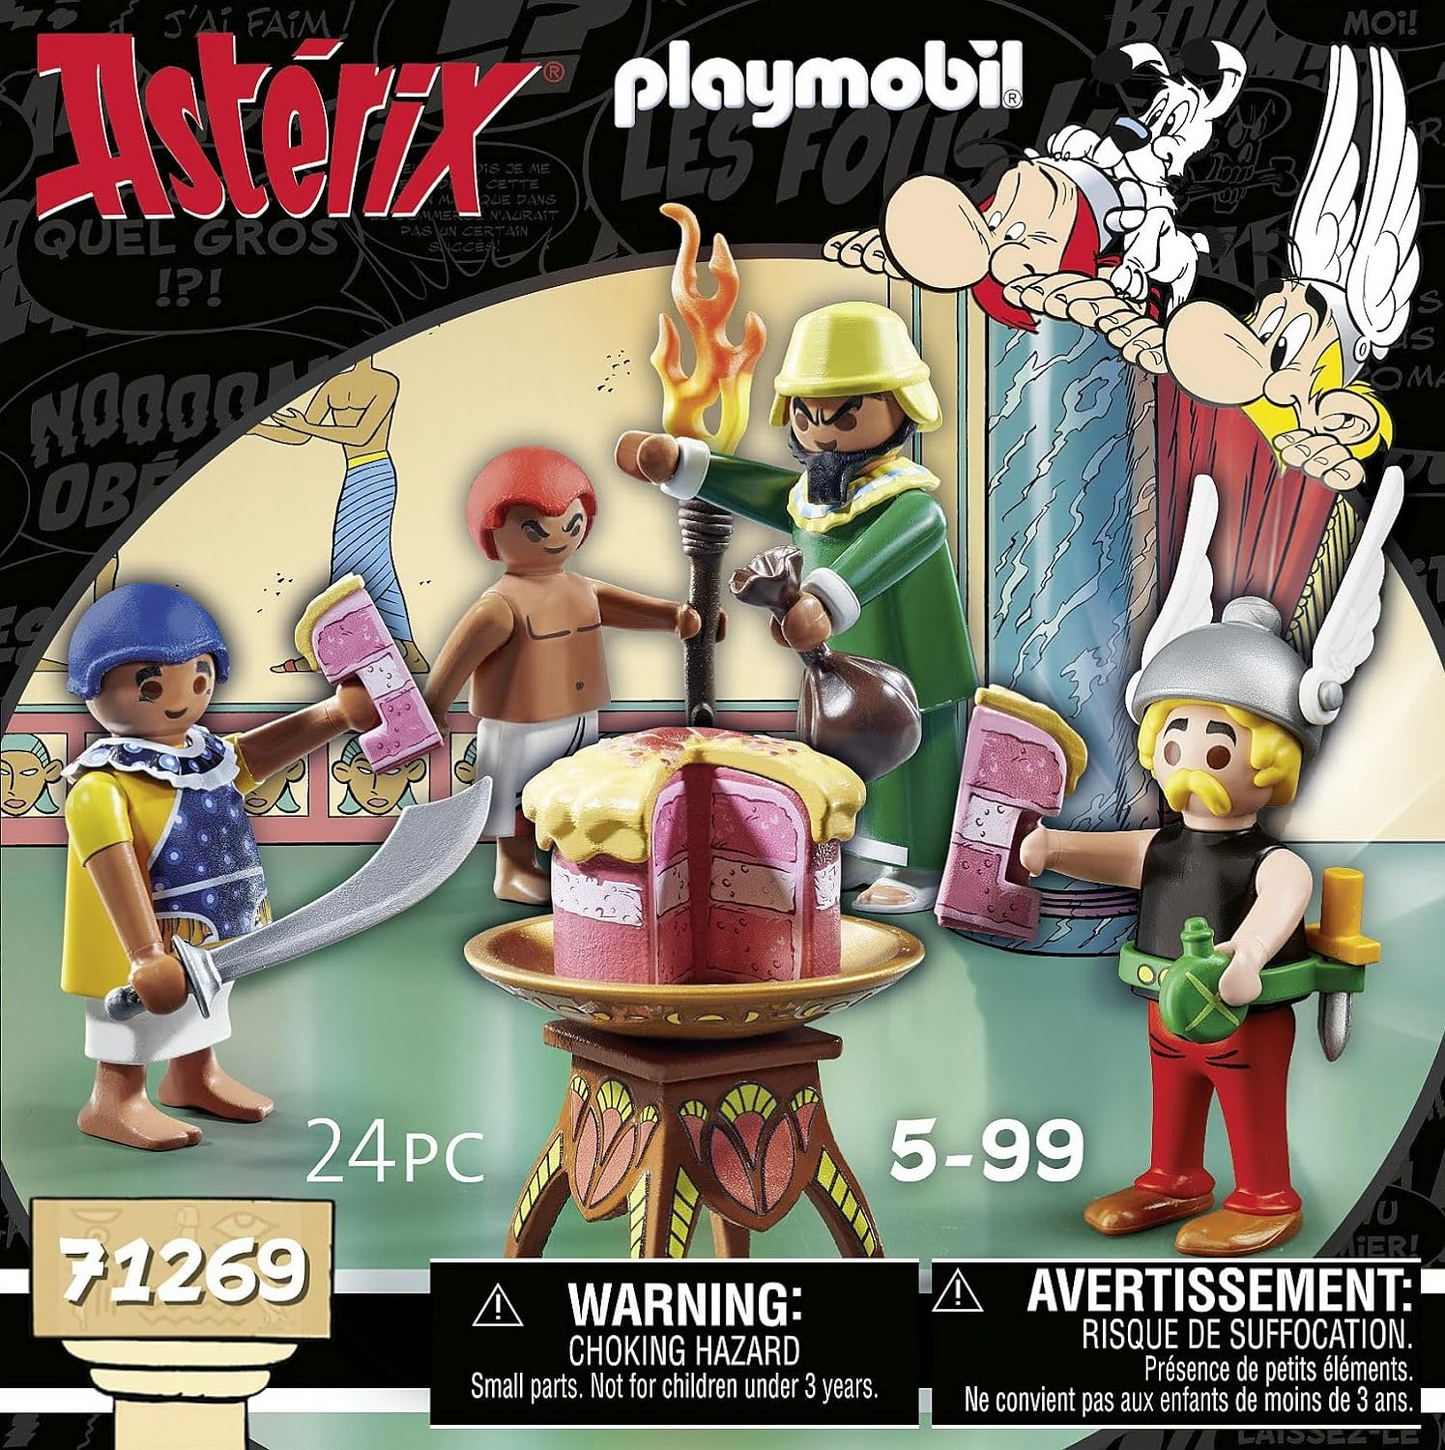 Playmobil 71269 Asterix: Bolo Envenenado de Artifis, provador de Cleópatra e Artifis, bem como seu assistente Krukhut, figuras de coleção, dramatização divertida e imaginativa, conjuntos de jogos adequados para crianças de 5 anos ou mais